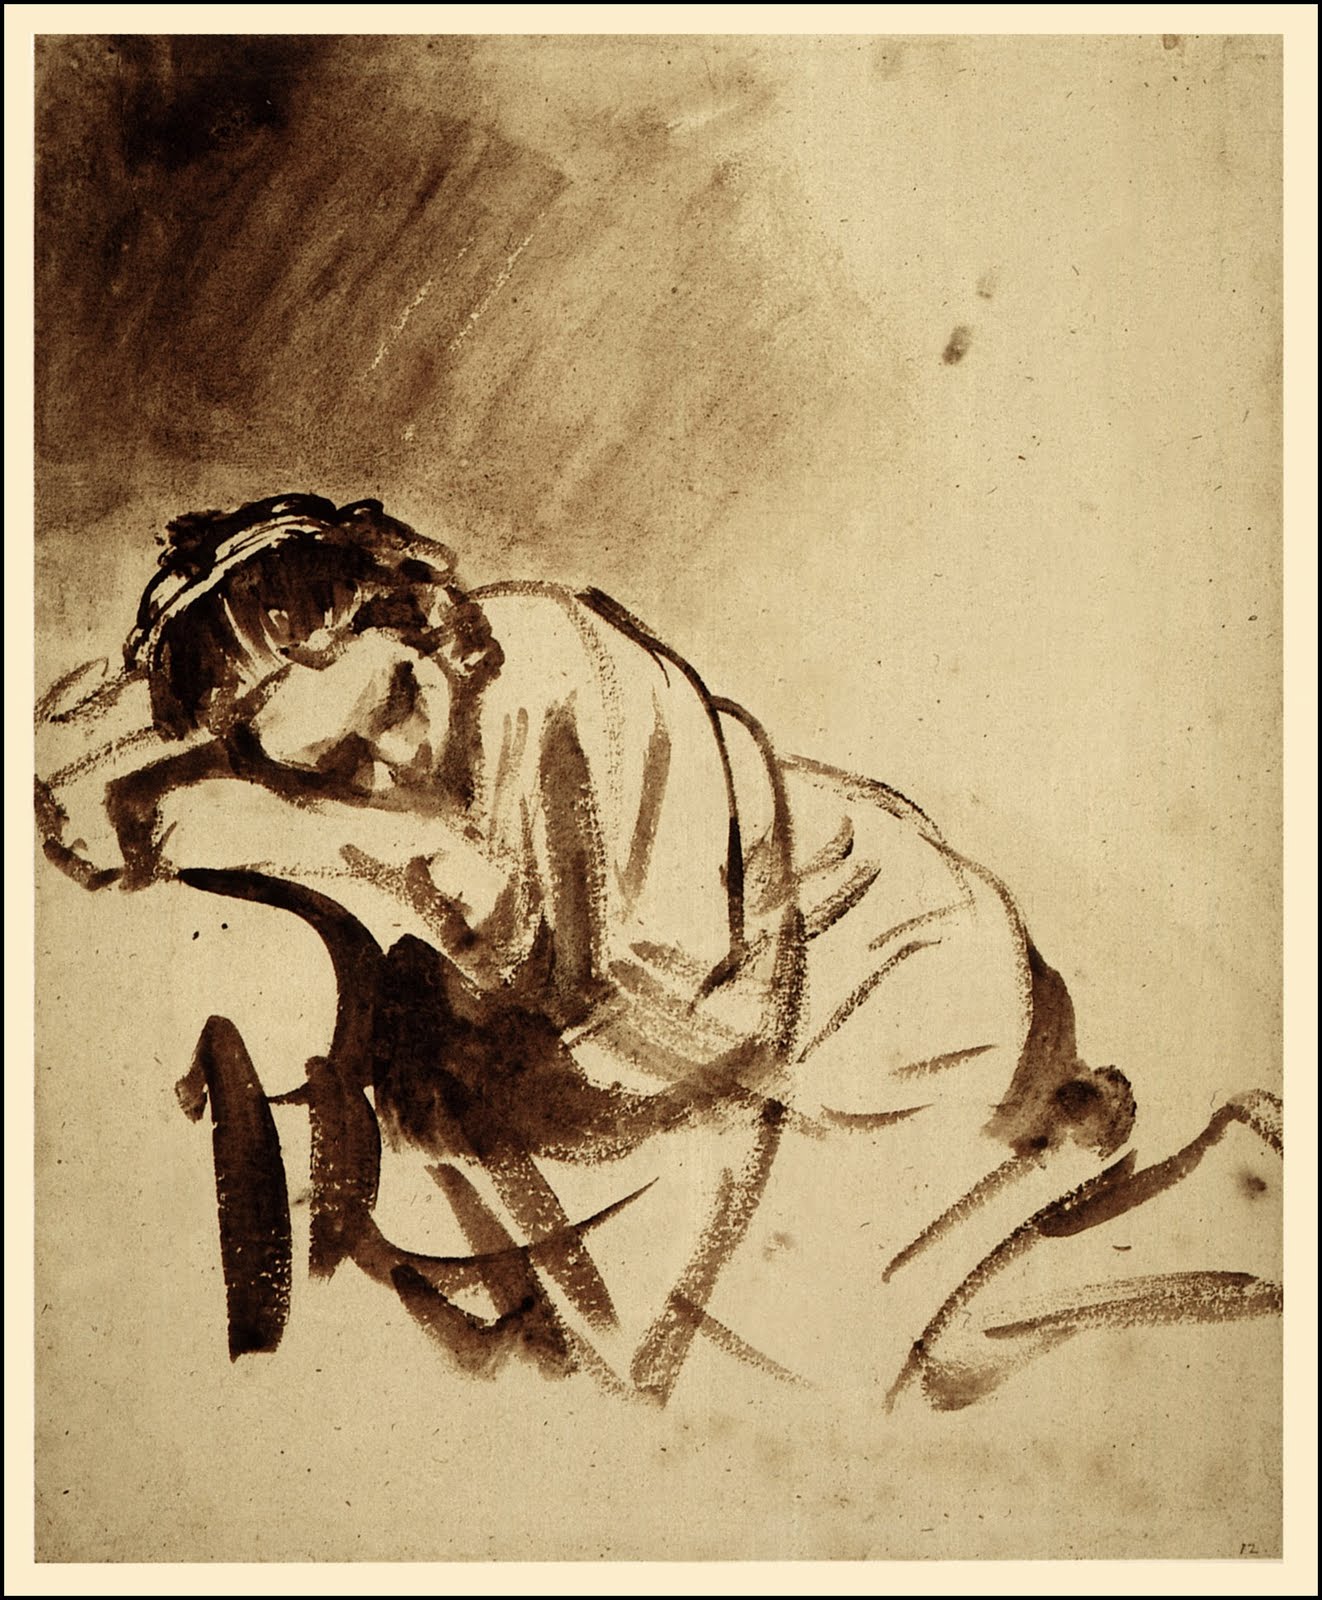 Young Woman Sleeping by Rembrandt van Rijn - 1654/1654 - 246 x 203 mm British Museum